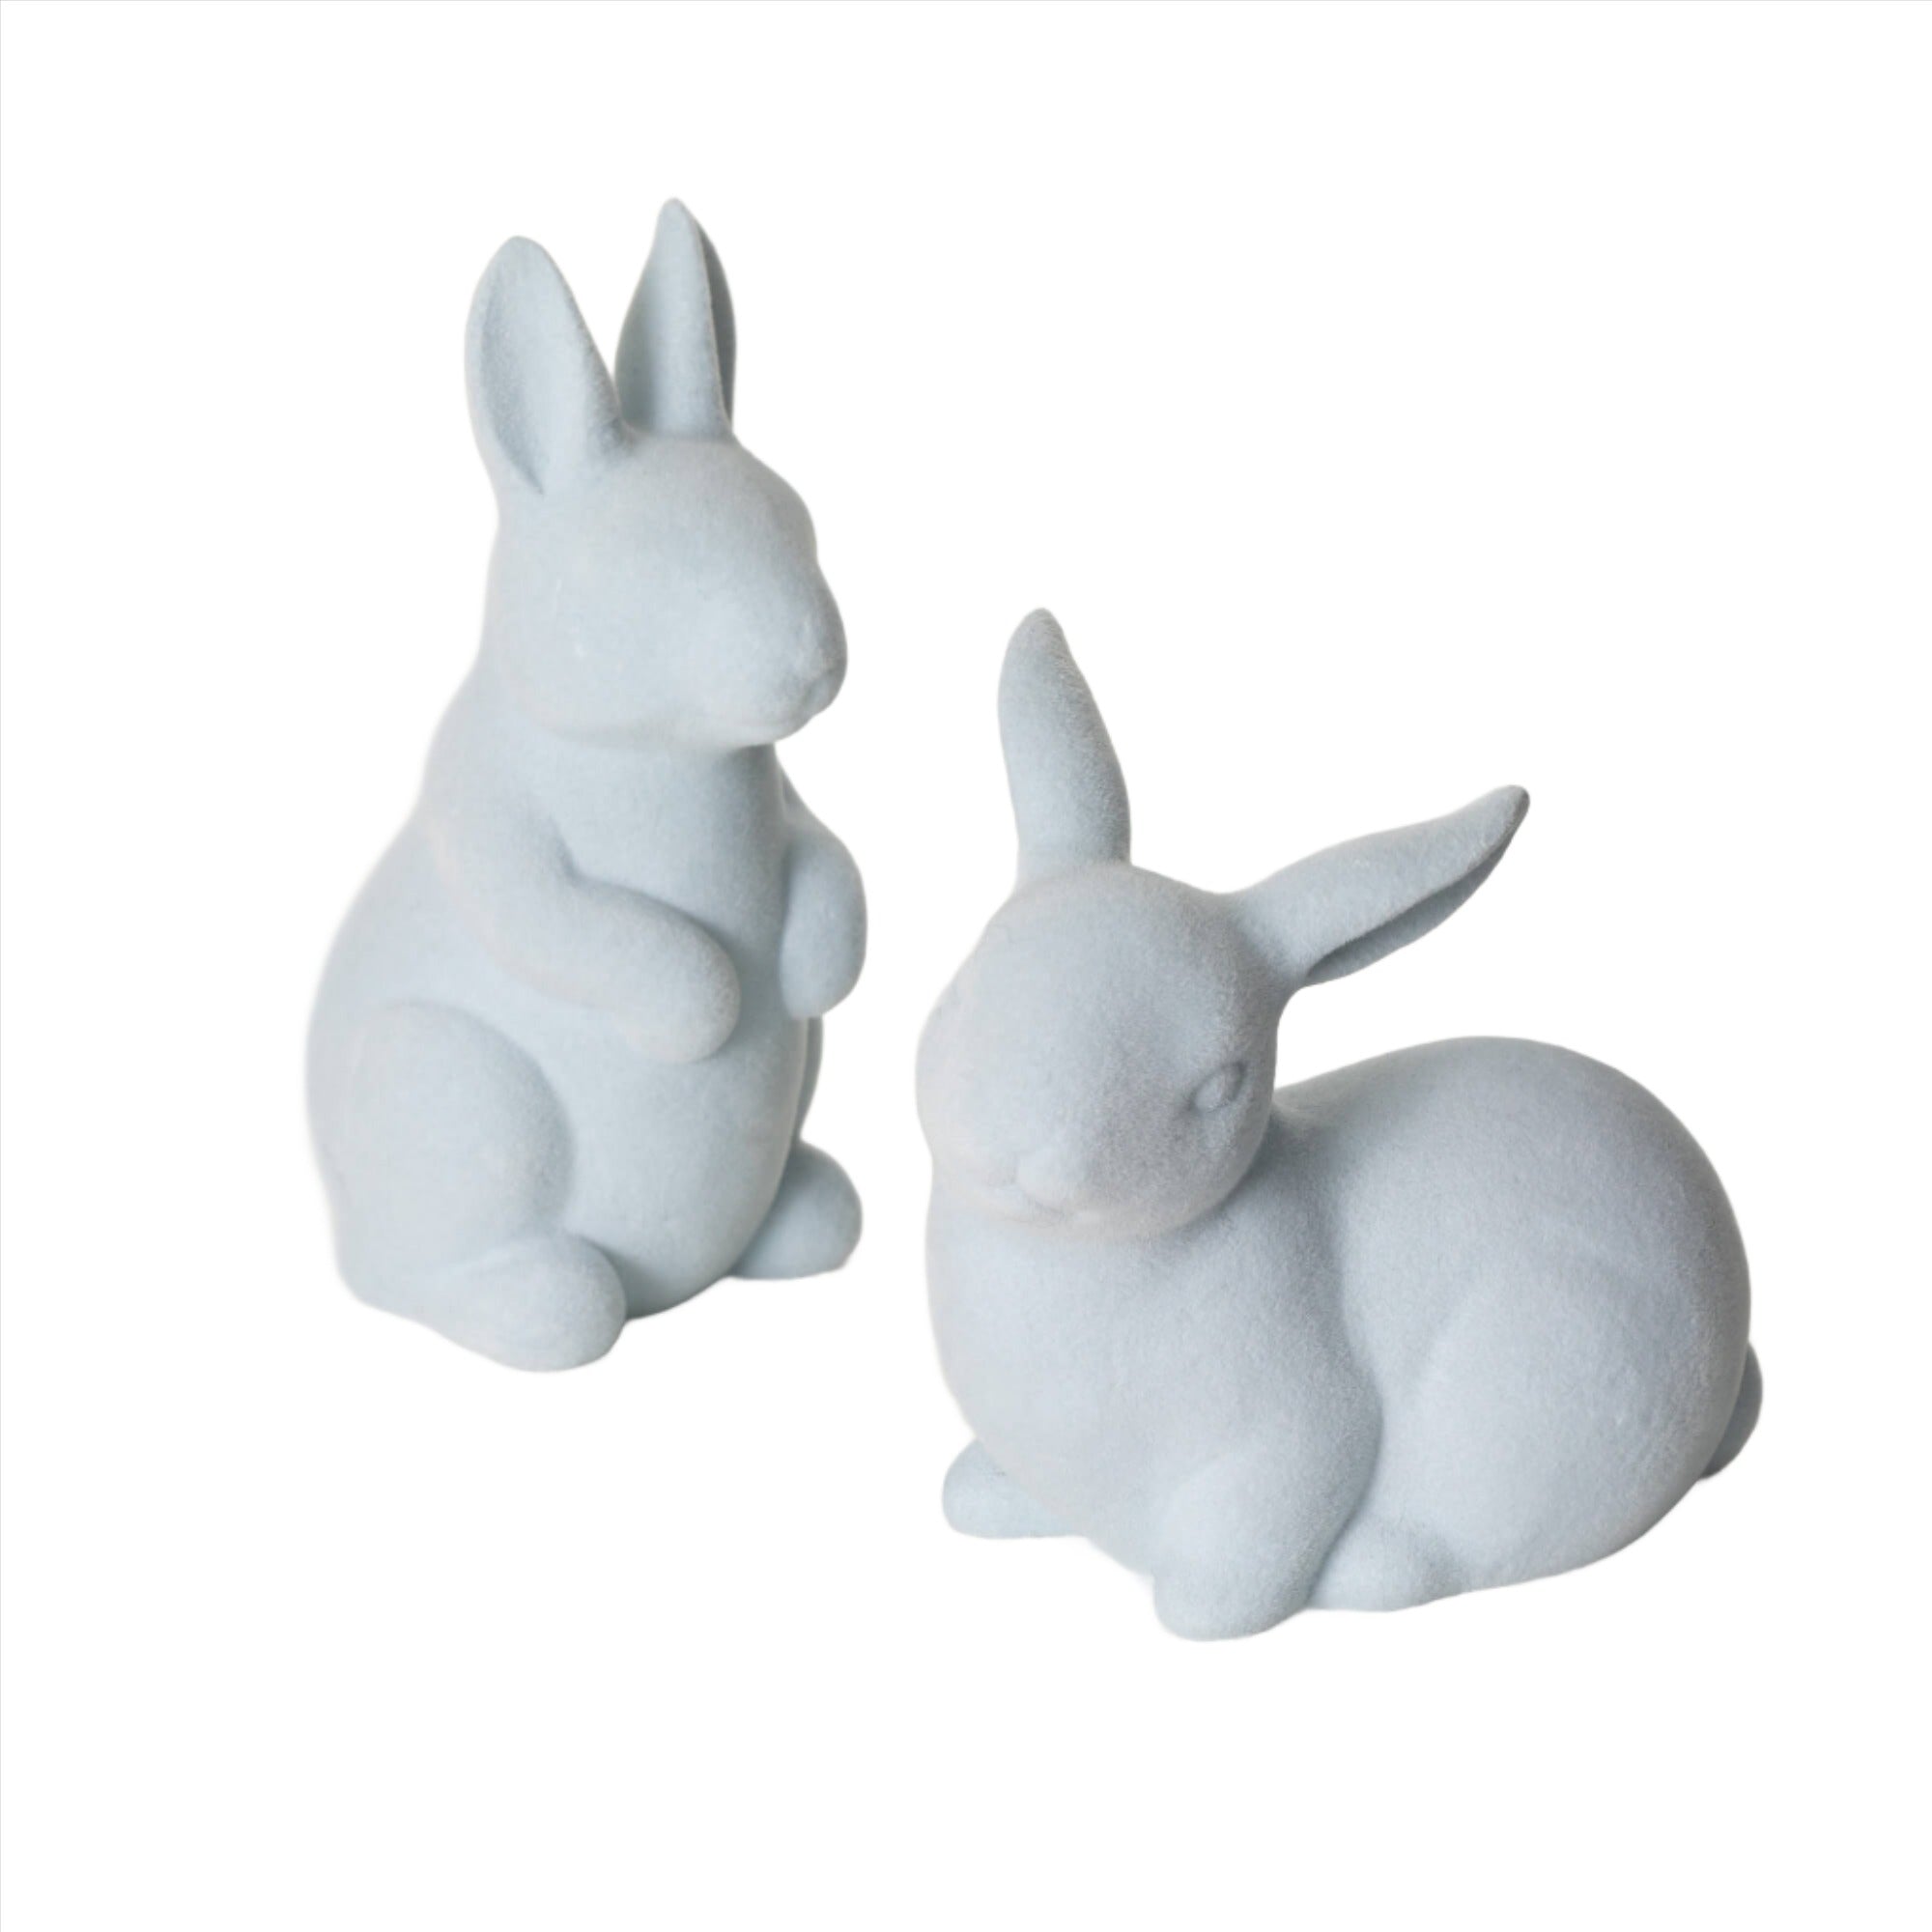 Blue Bunny Figurine - Zinnias Gift Boutique